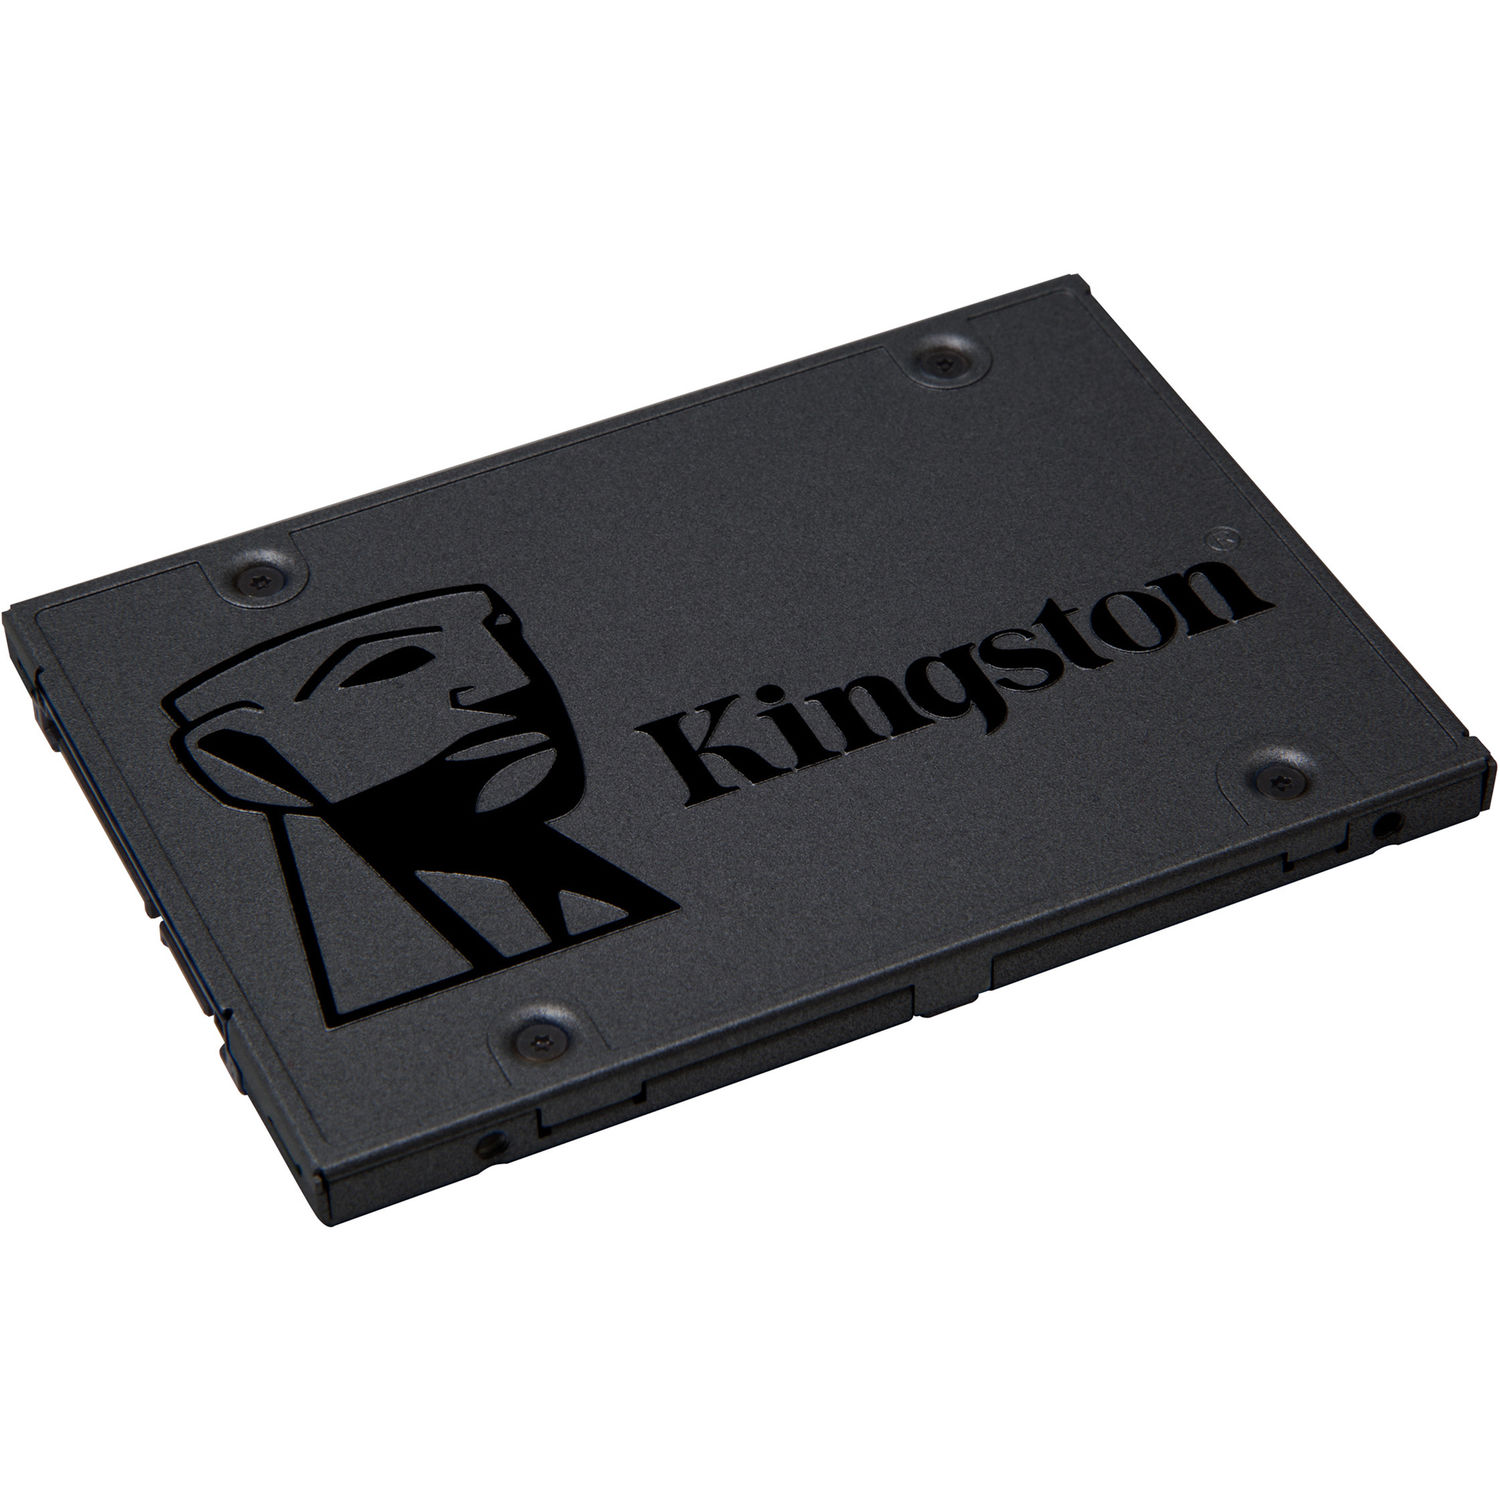 Ssd Interno Kingston A400 Sata Iii de 120Gb en Formato 2.5